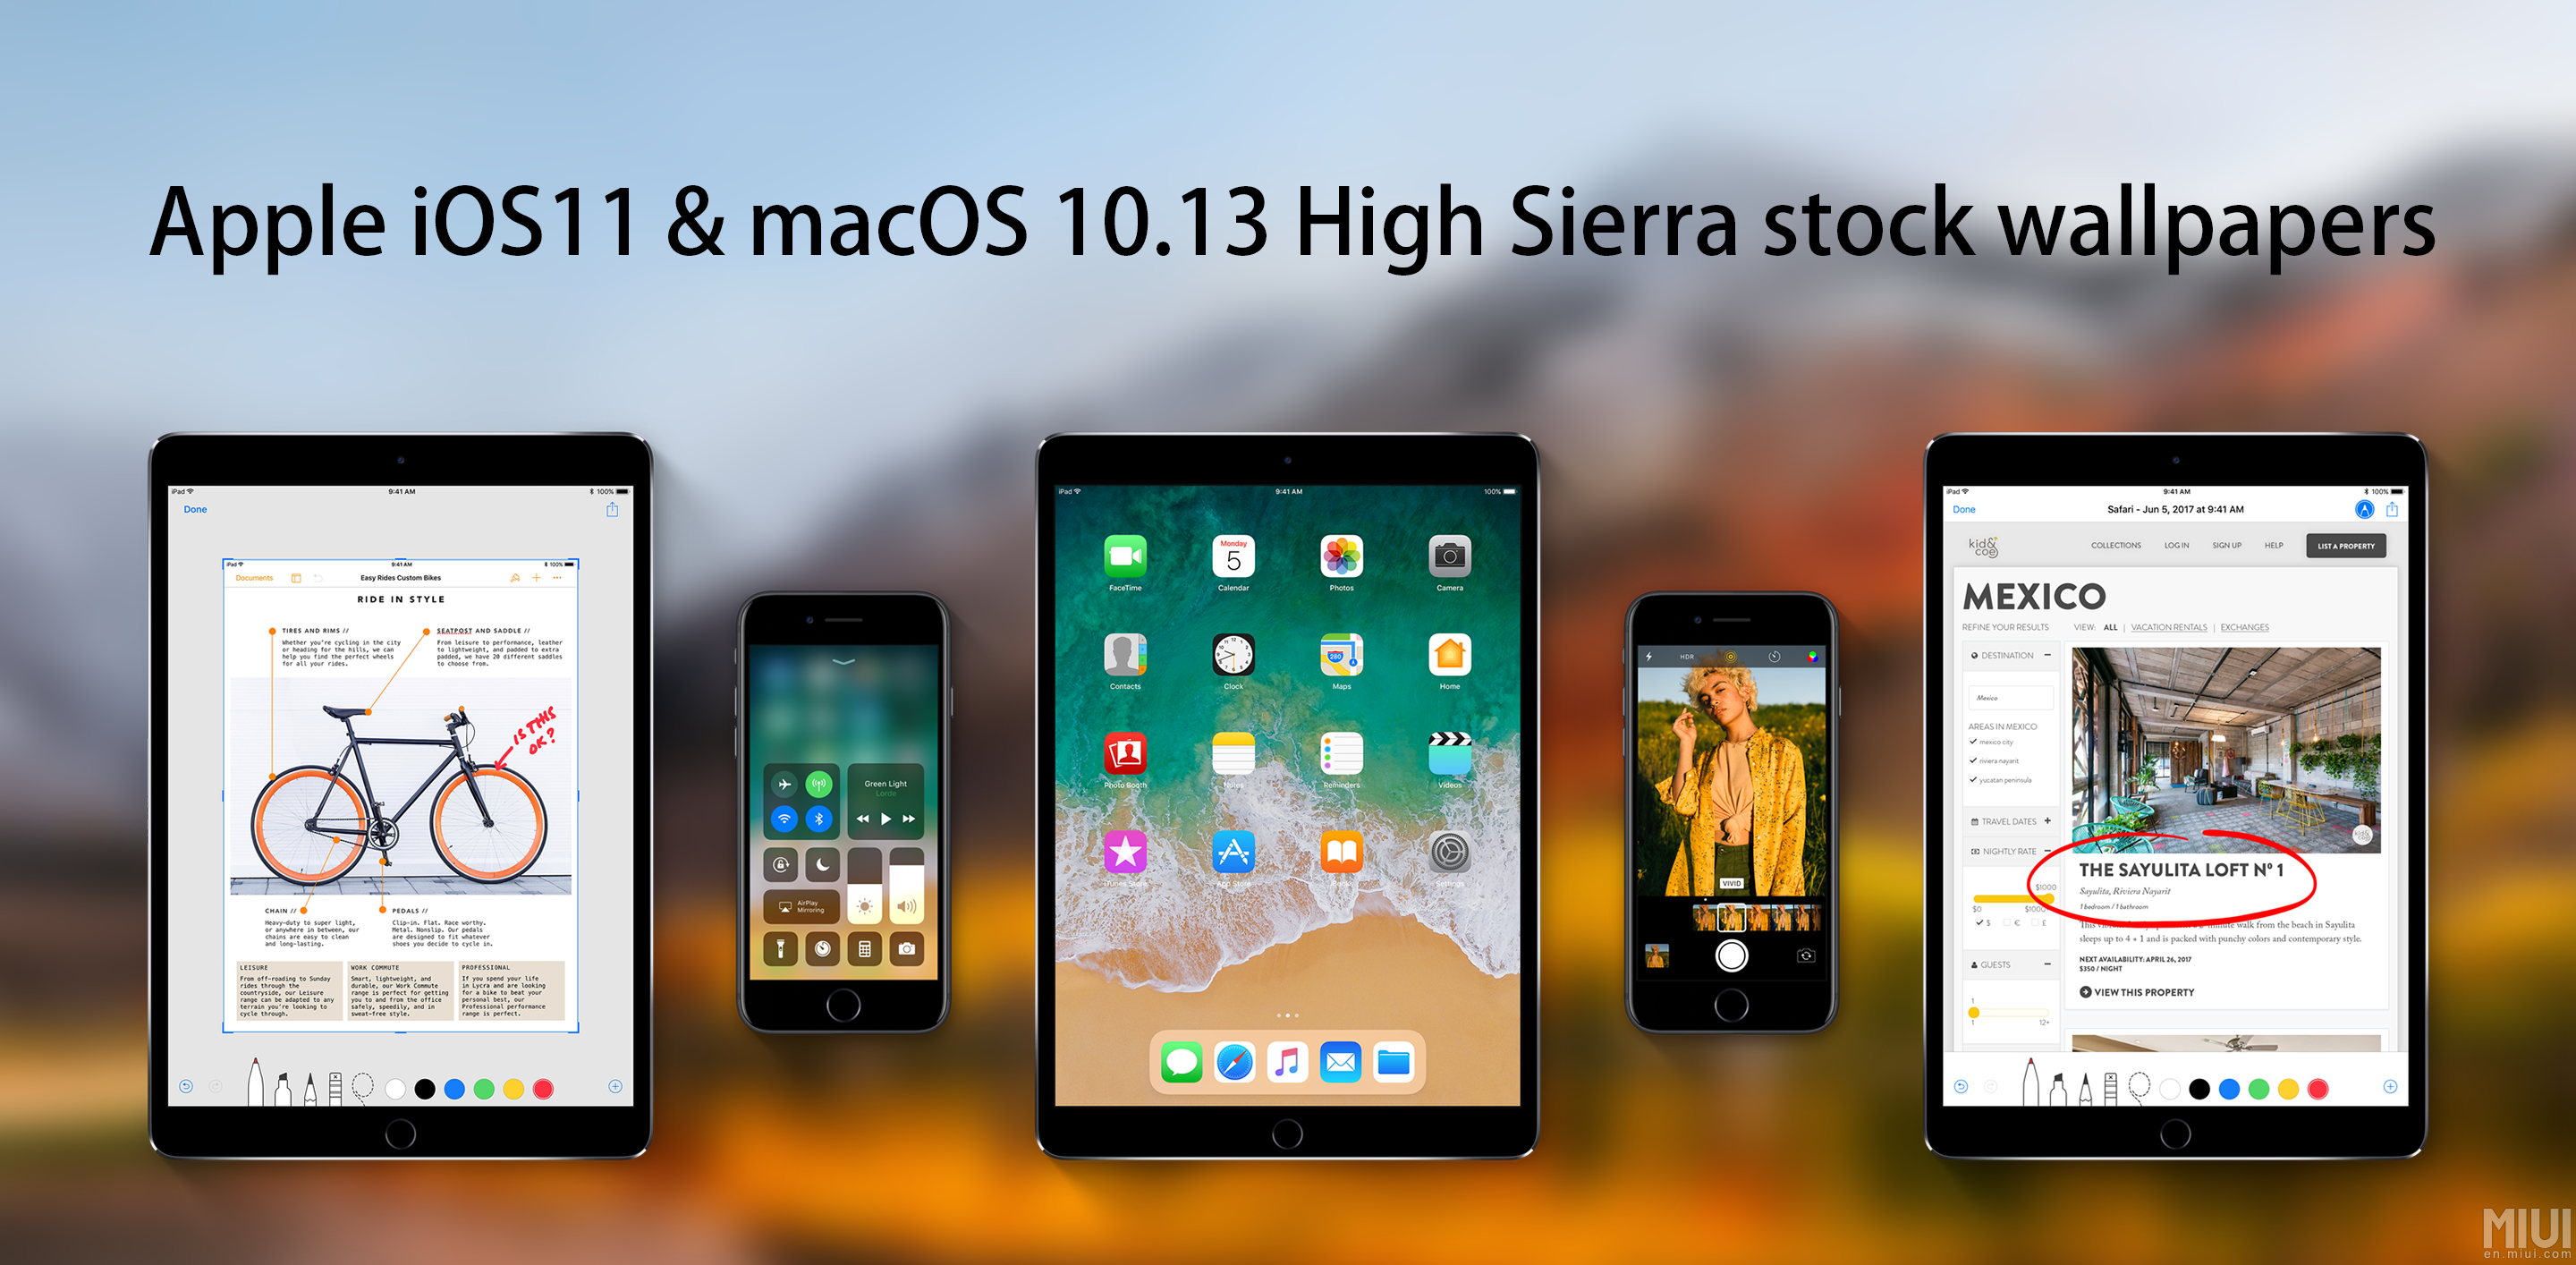 macos 10.13 high sierra download